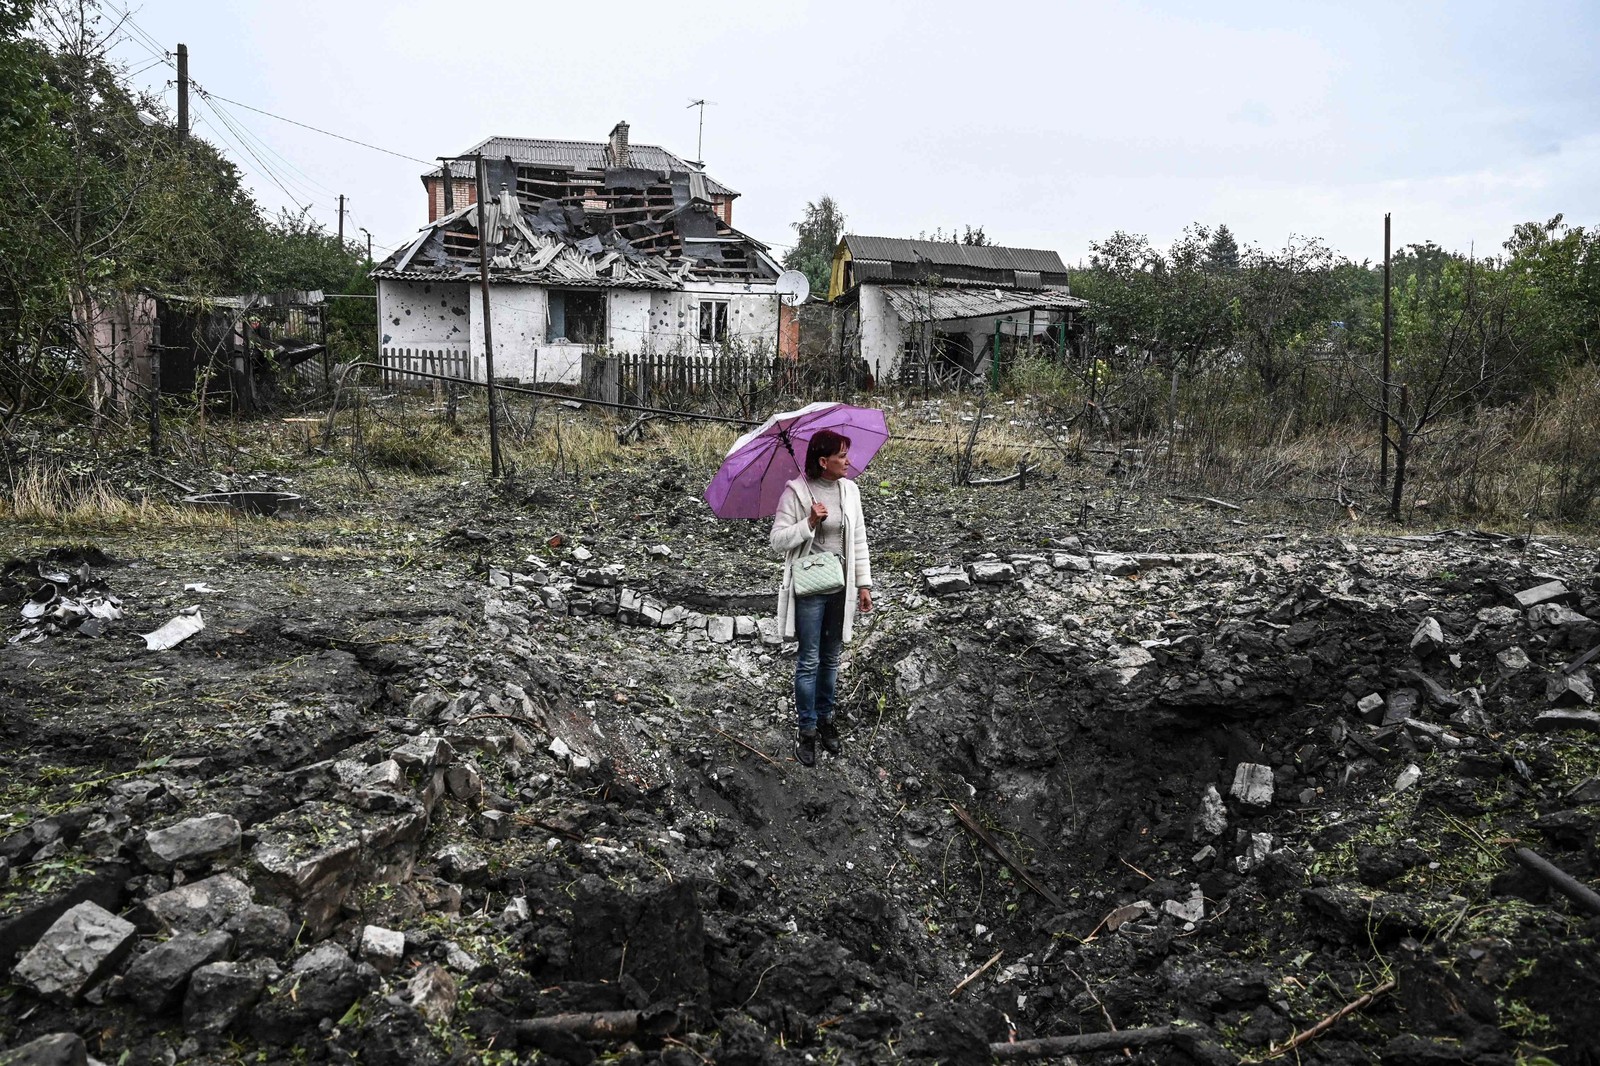 Mulher observa destroços em frente à casa destruída, em Kramatorsk, região de Donetsk, Ucrânia — Foto: JUAN BARRETO / AFP